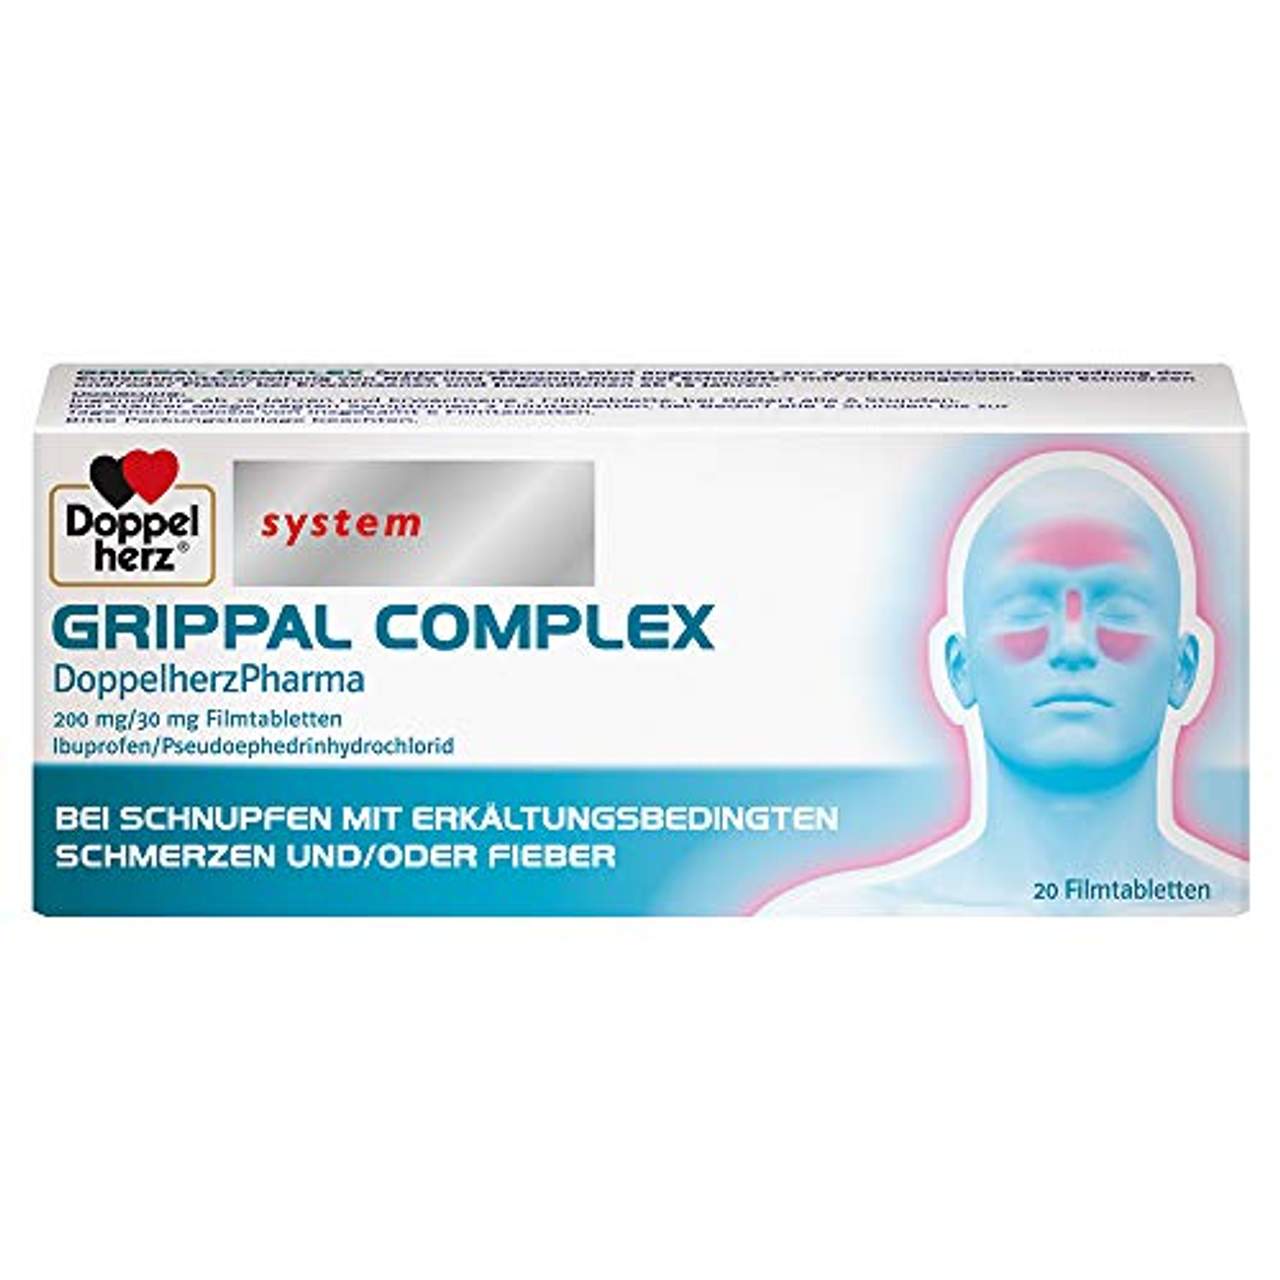 Grippal Complex DoppelherzPharma 200 mg/30 mg Filmtabletten